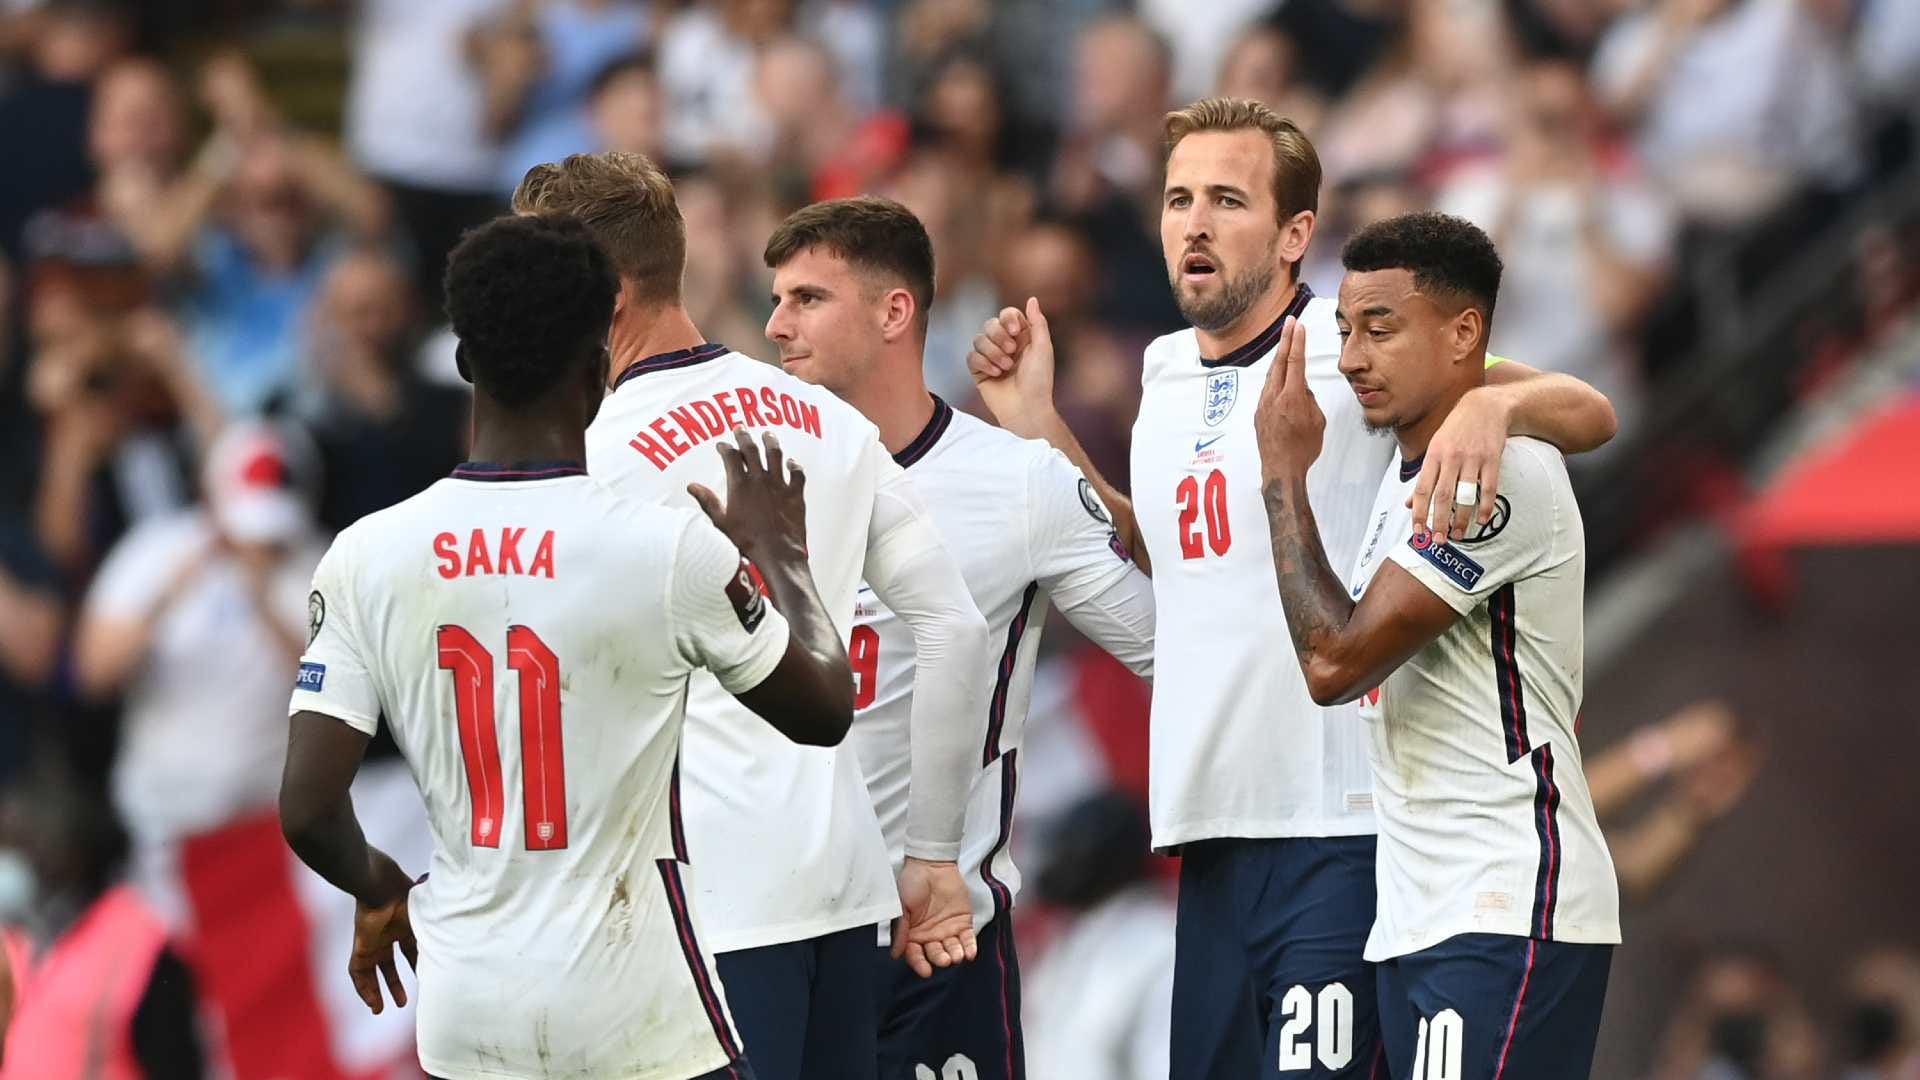 10月w杯予選に臨むイングランド代表23名が決定 フォーデンやアーセナル新守護神が復帰 Goal Com 日本